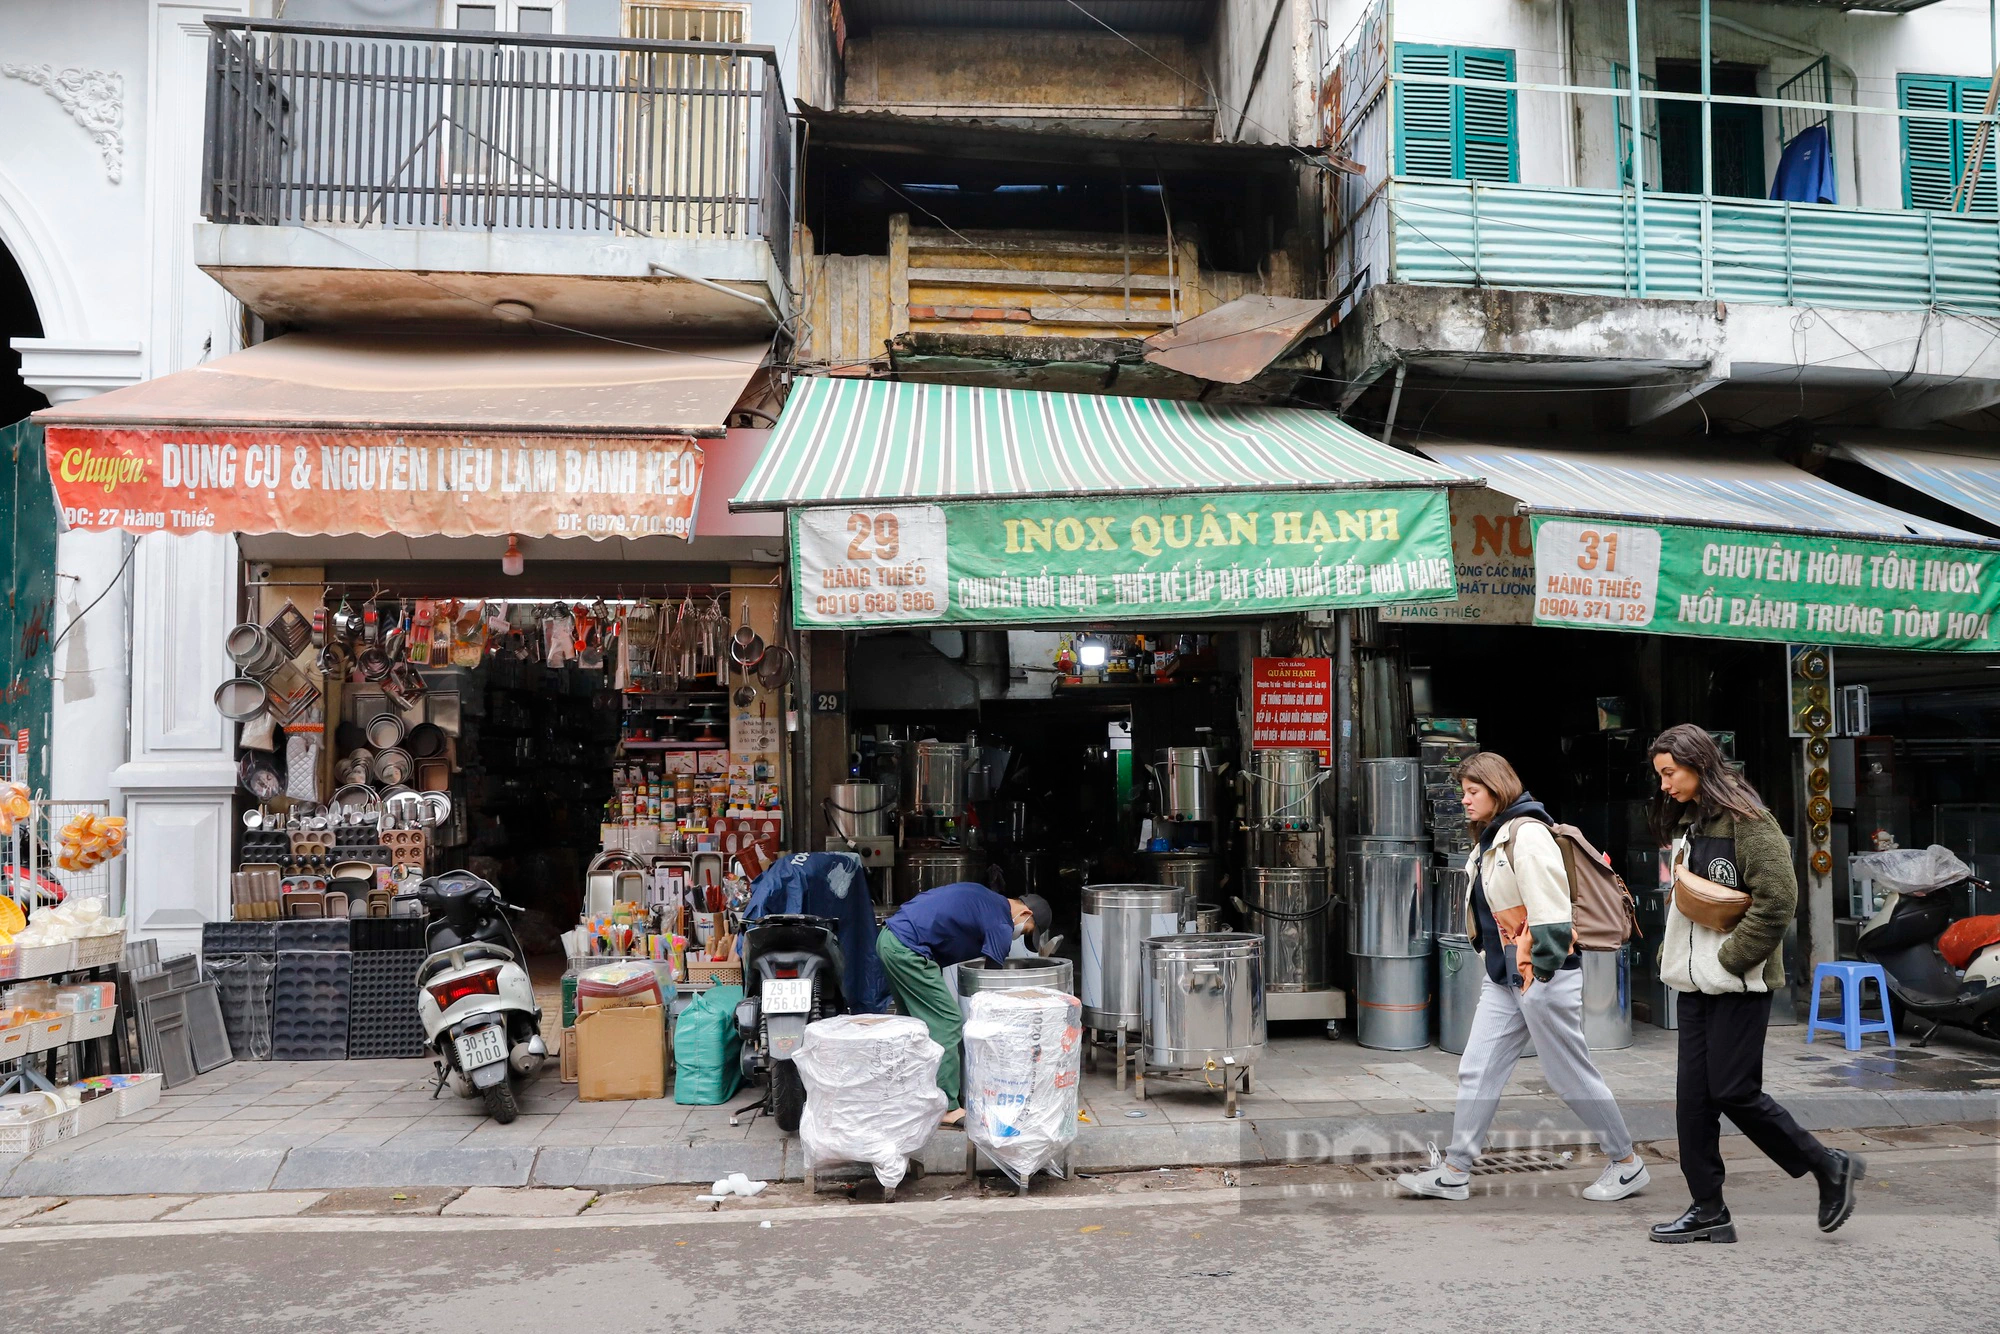 Nhà phố cổ Hà Nội giảm giá 50% nhưng vẫn đỏ mắt tìm người mua - Ảnh 7.